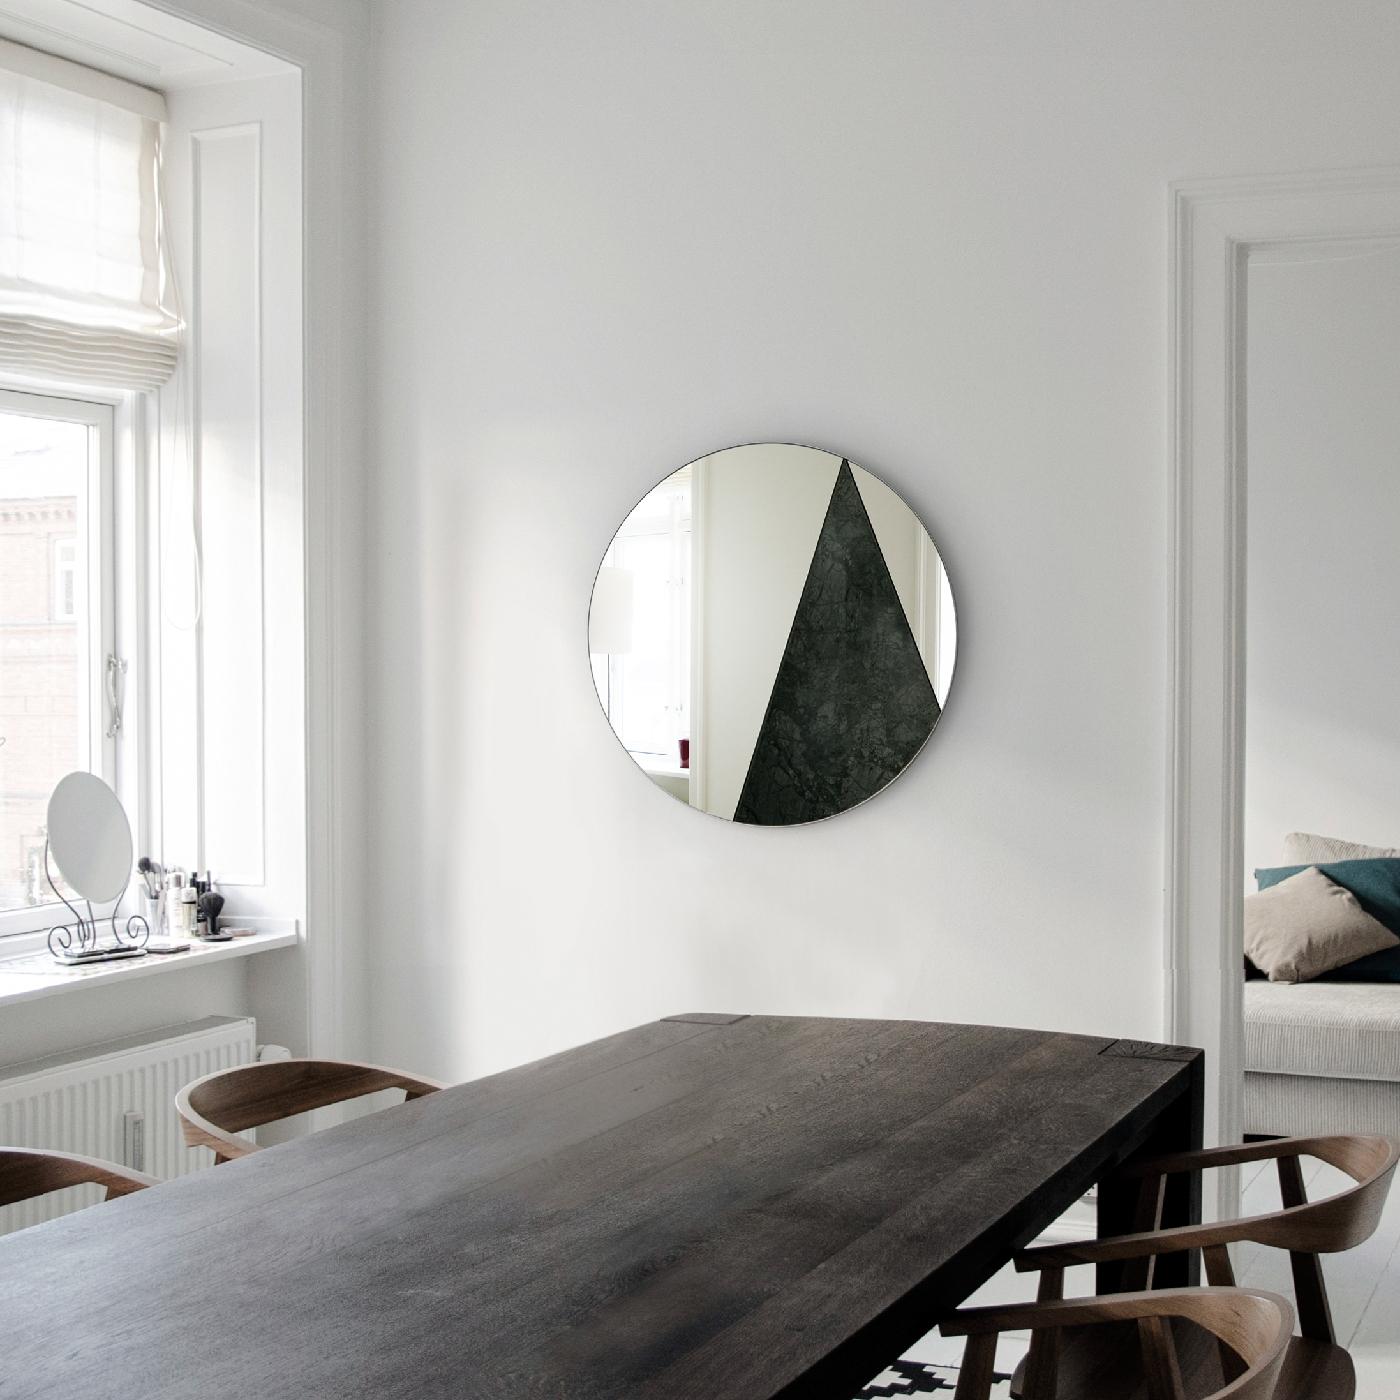 Fusionnant des matériaux traditionnels avec un design minimaliste, la collection Res est une série de miroirs faits main d'un fort impact visuel marqué par une qualité de fabrication exquise. La silhouette ronde de ce miroir repose sur une base en